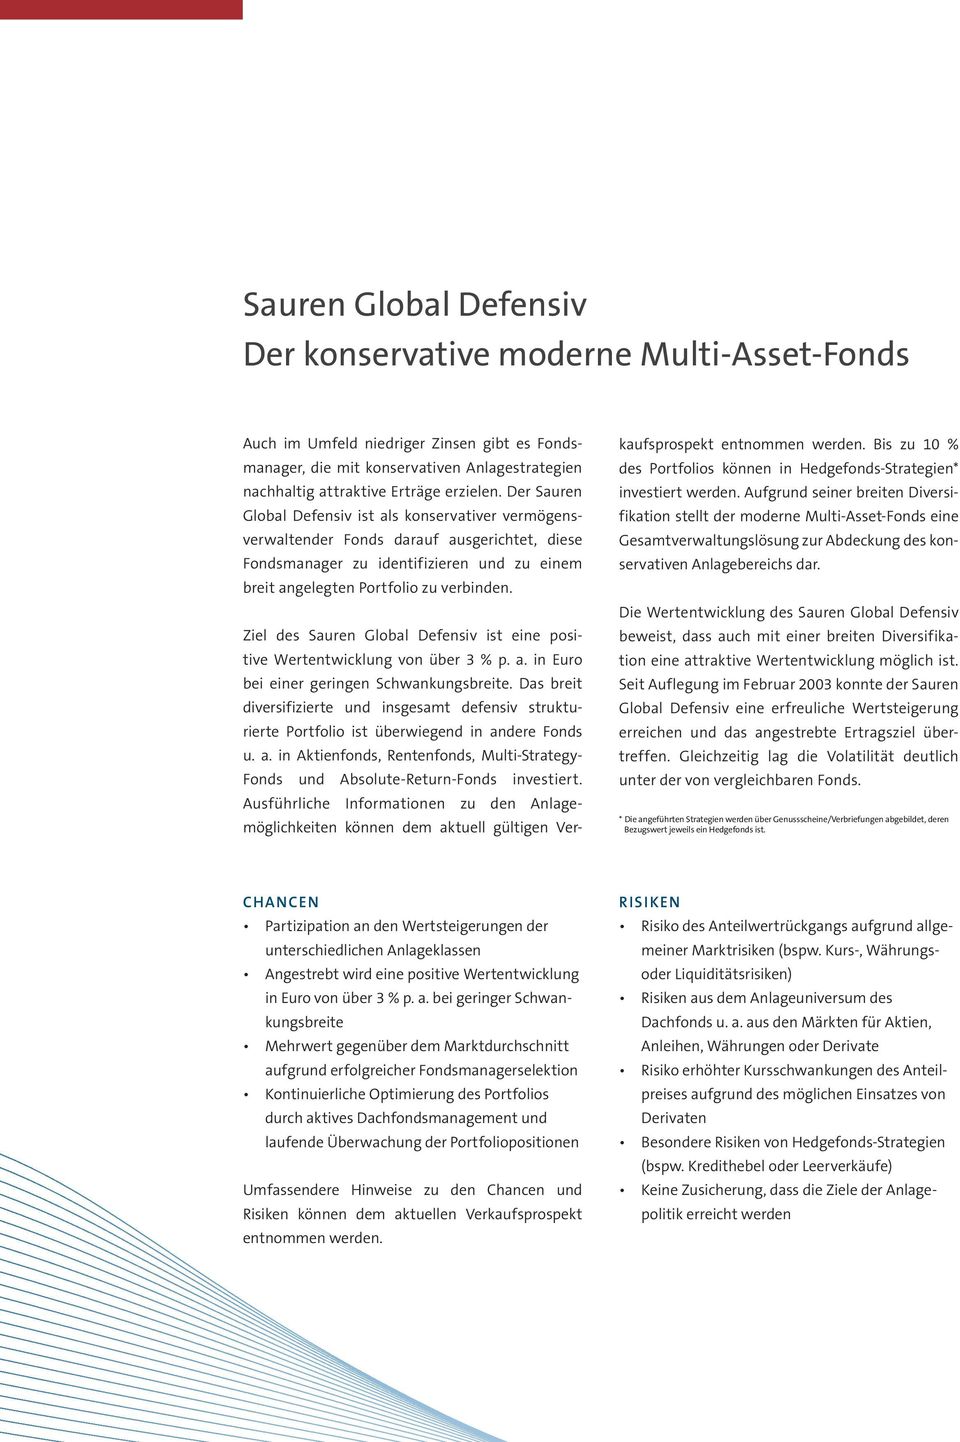 Ziel des Sauren Global Defensiv ist eine positive Wertentwicklung von über 3 % p. a. in Euro bei einer geringen Schwankungsbreite.